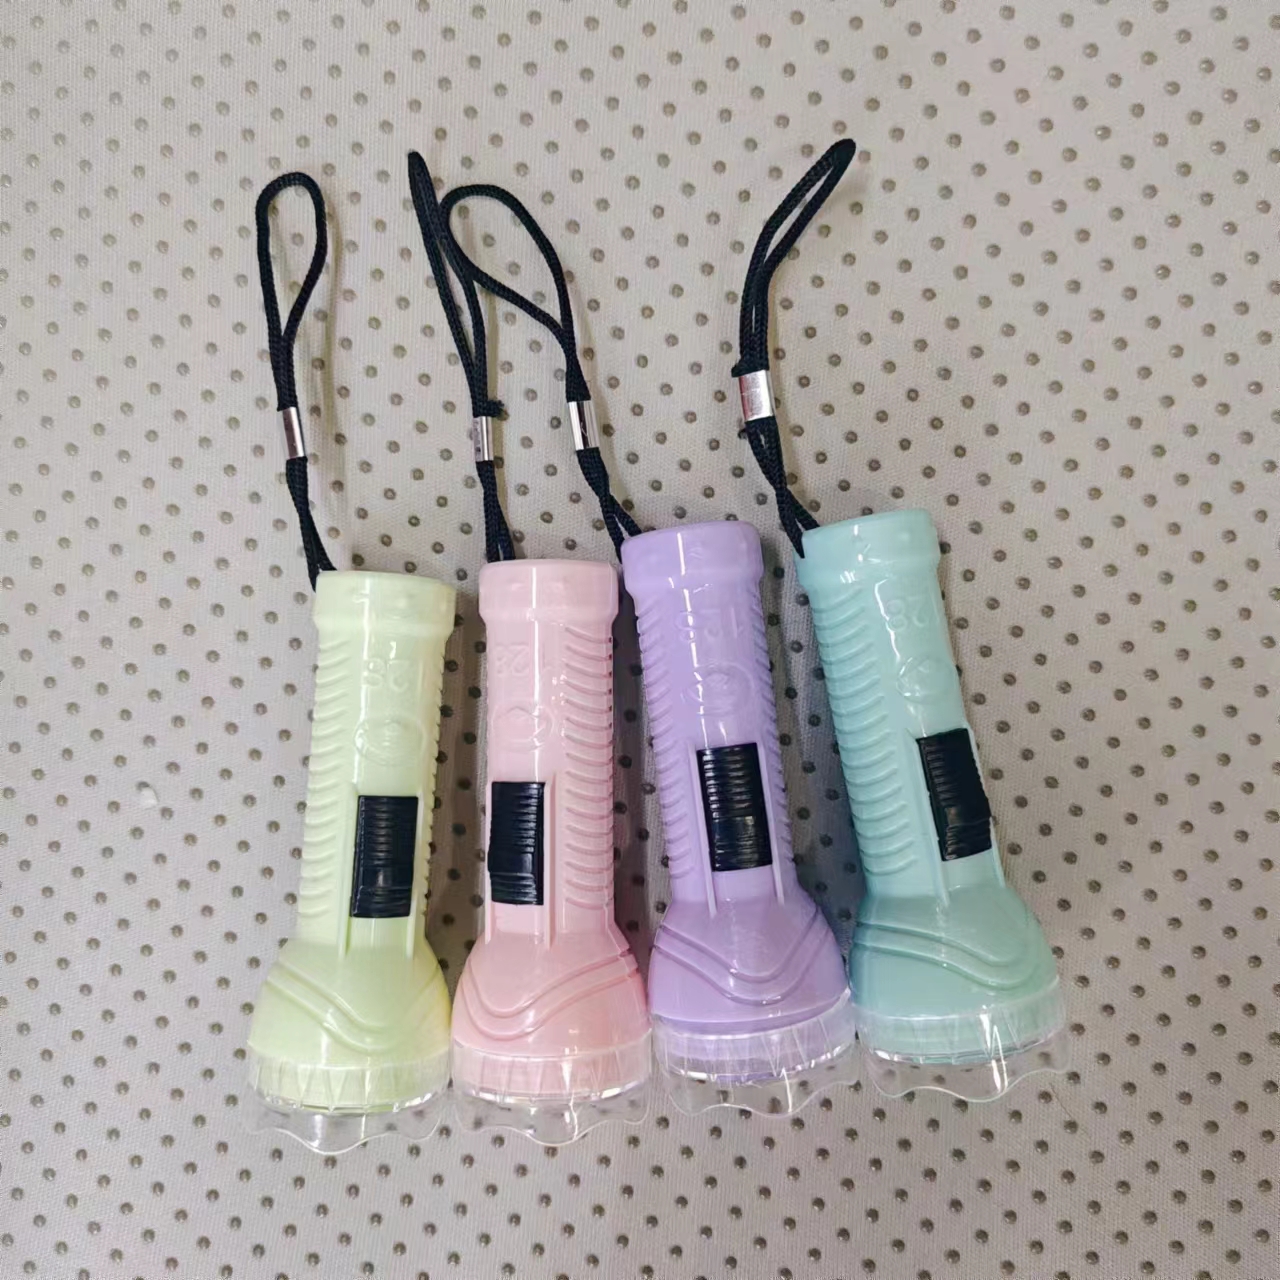 手电筒 塑料发光玩具 小礼品 活动赠送 方便携带挂绳手电 128 厂家直销  